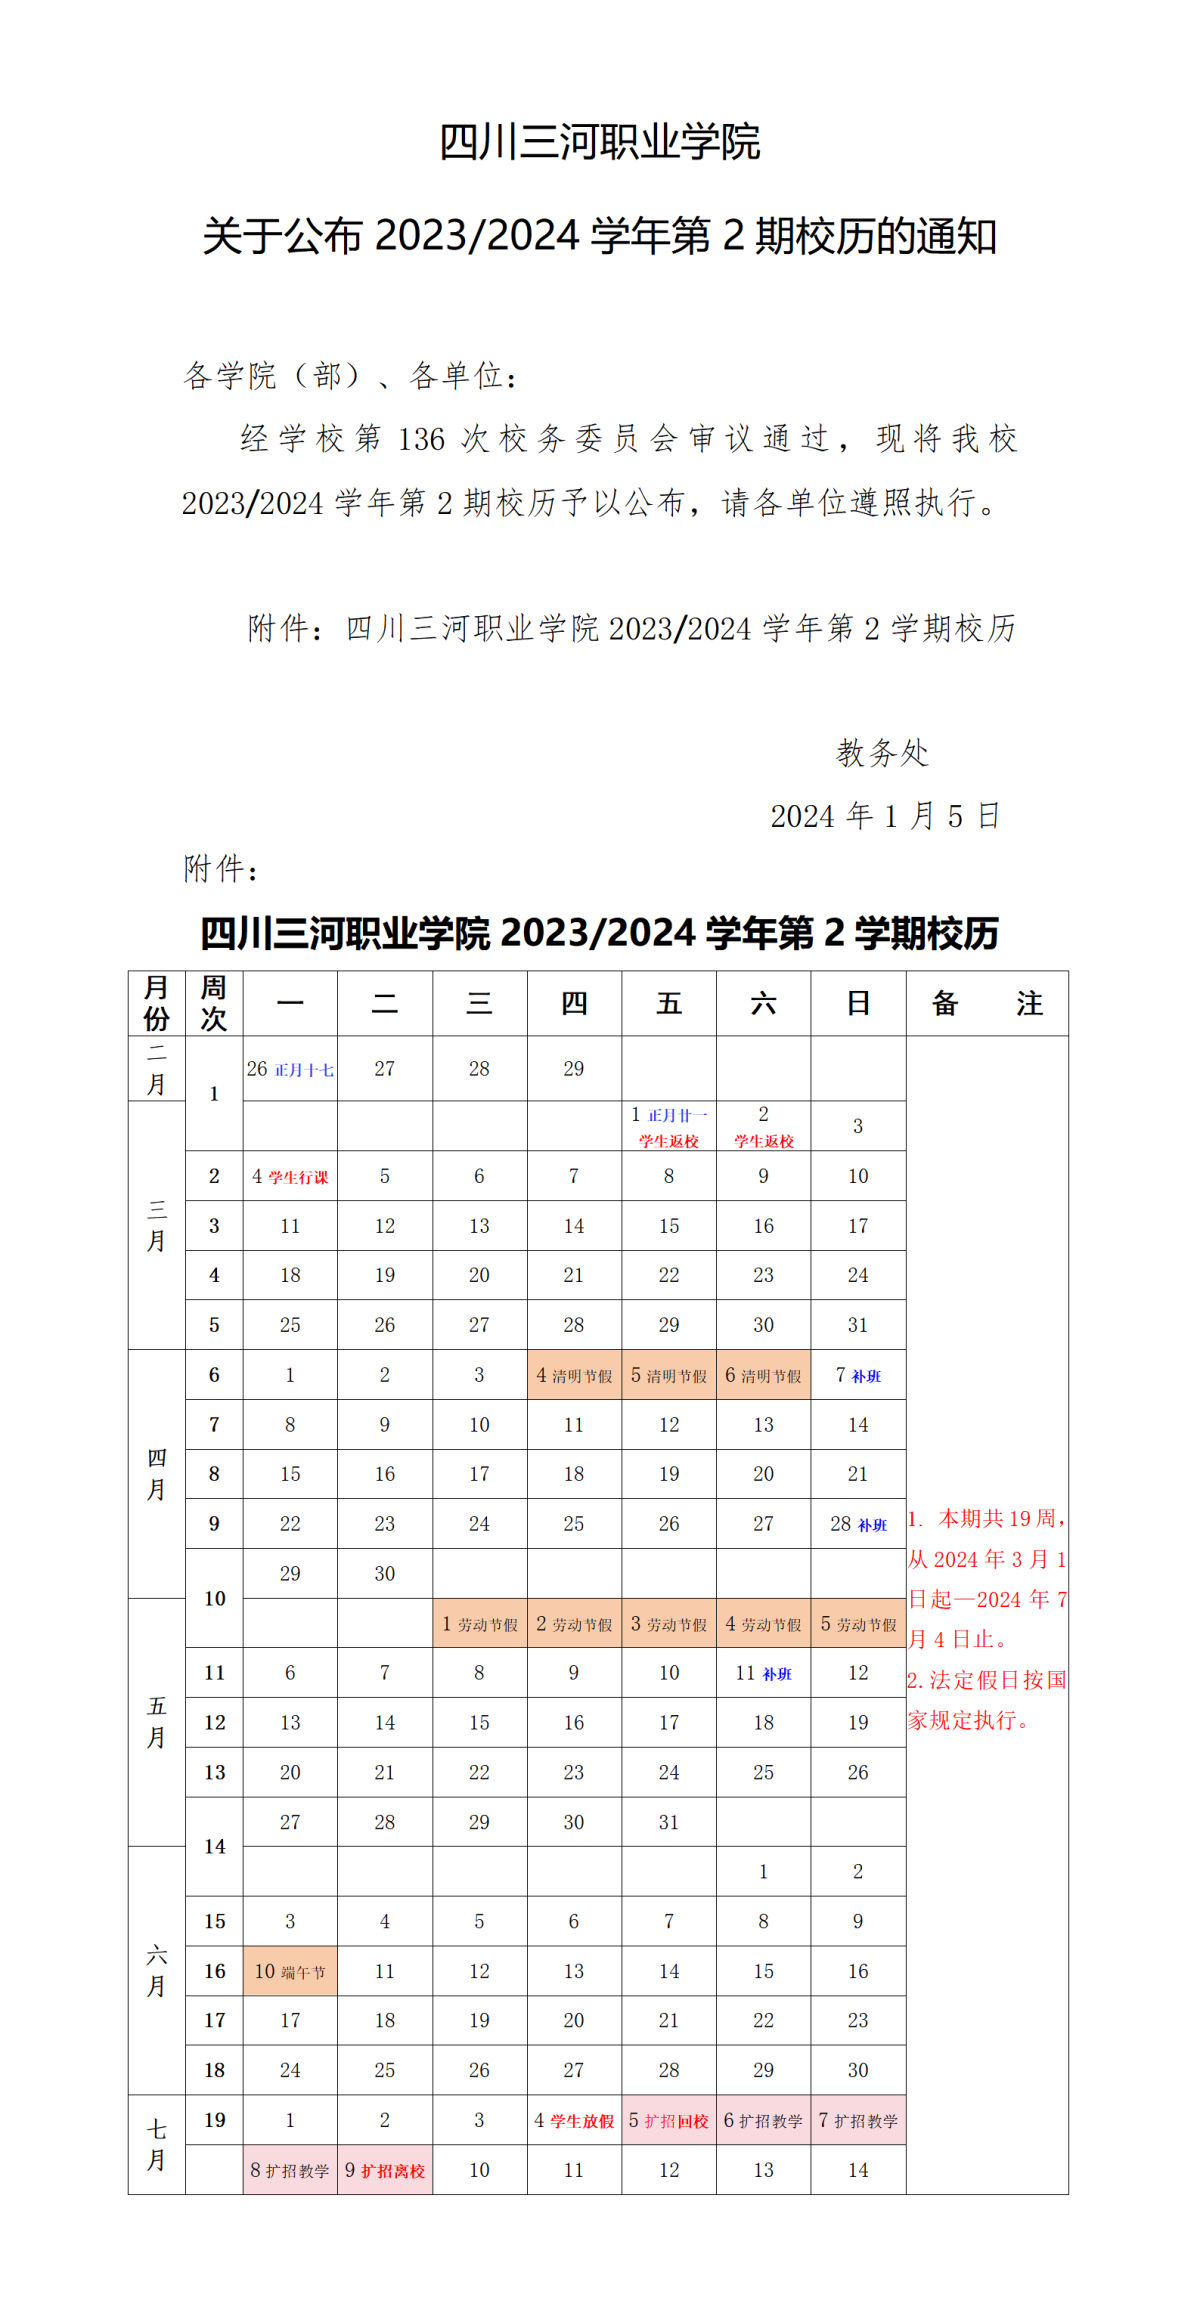 四川三河职业学院关于公布2023-2024学年第2期校历的通知_01(1)